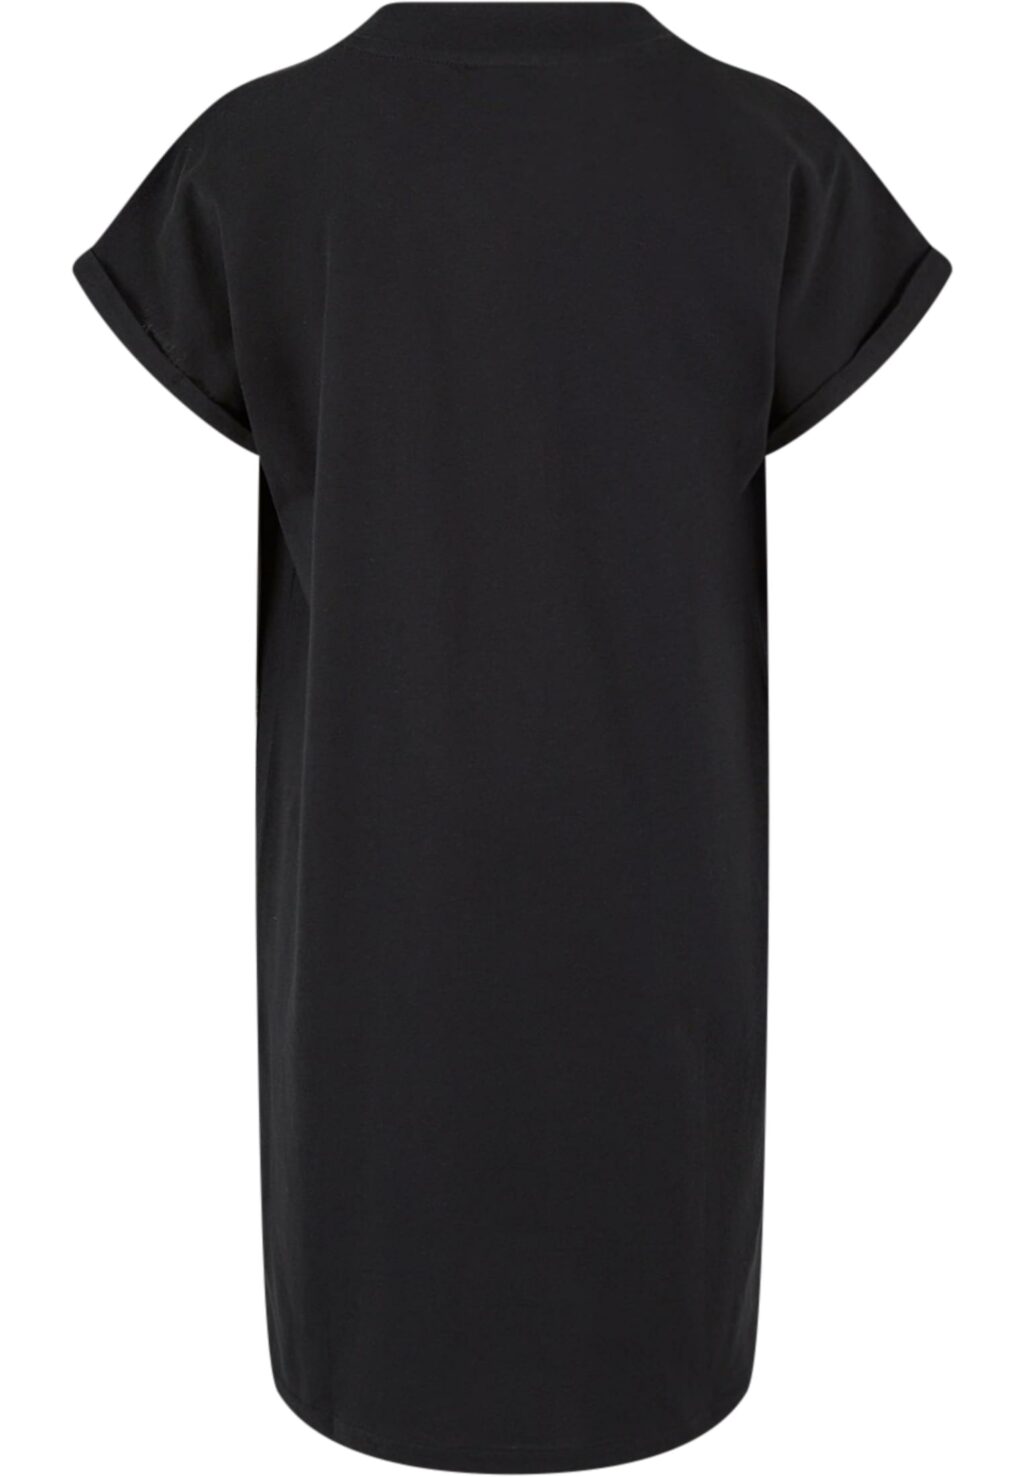 Girls Turtle Extended Shoulder Dress black+white UCK1910A